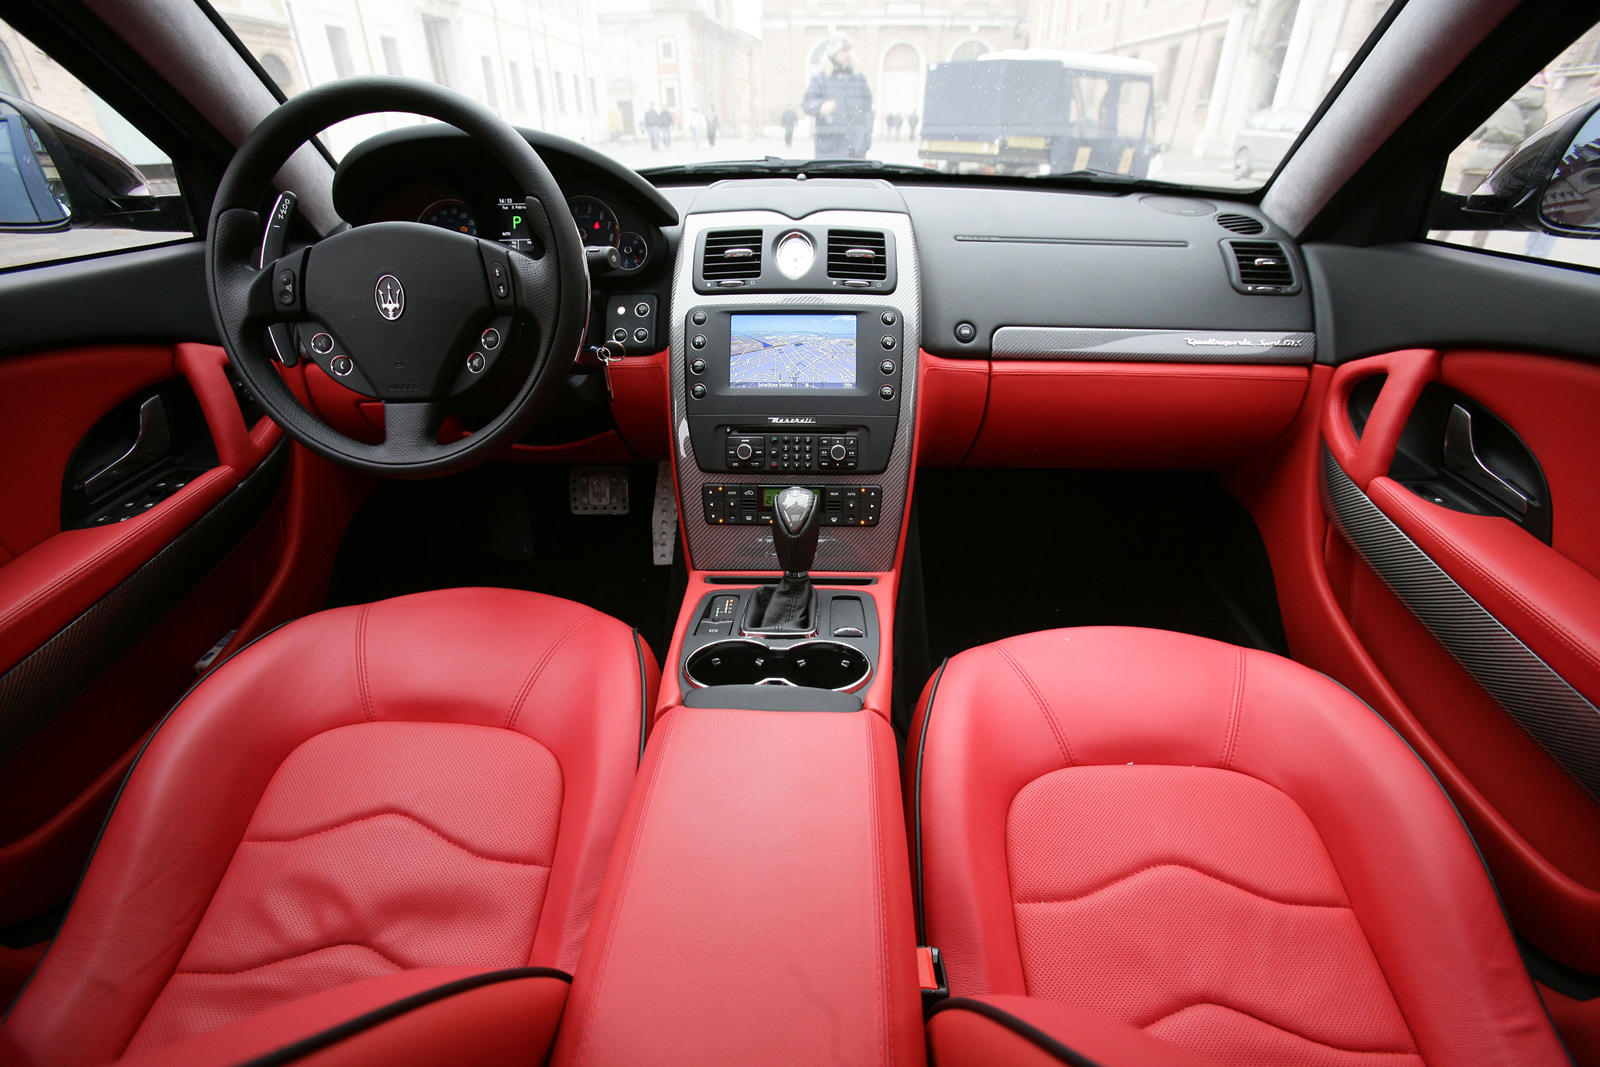 2010 Maserati Quattroporte Dashboard